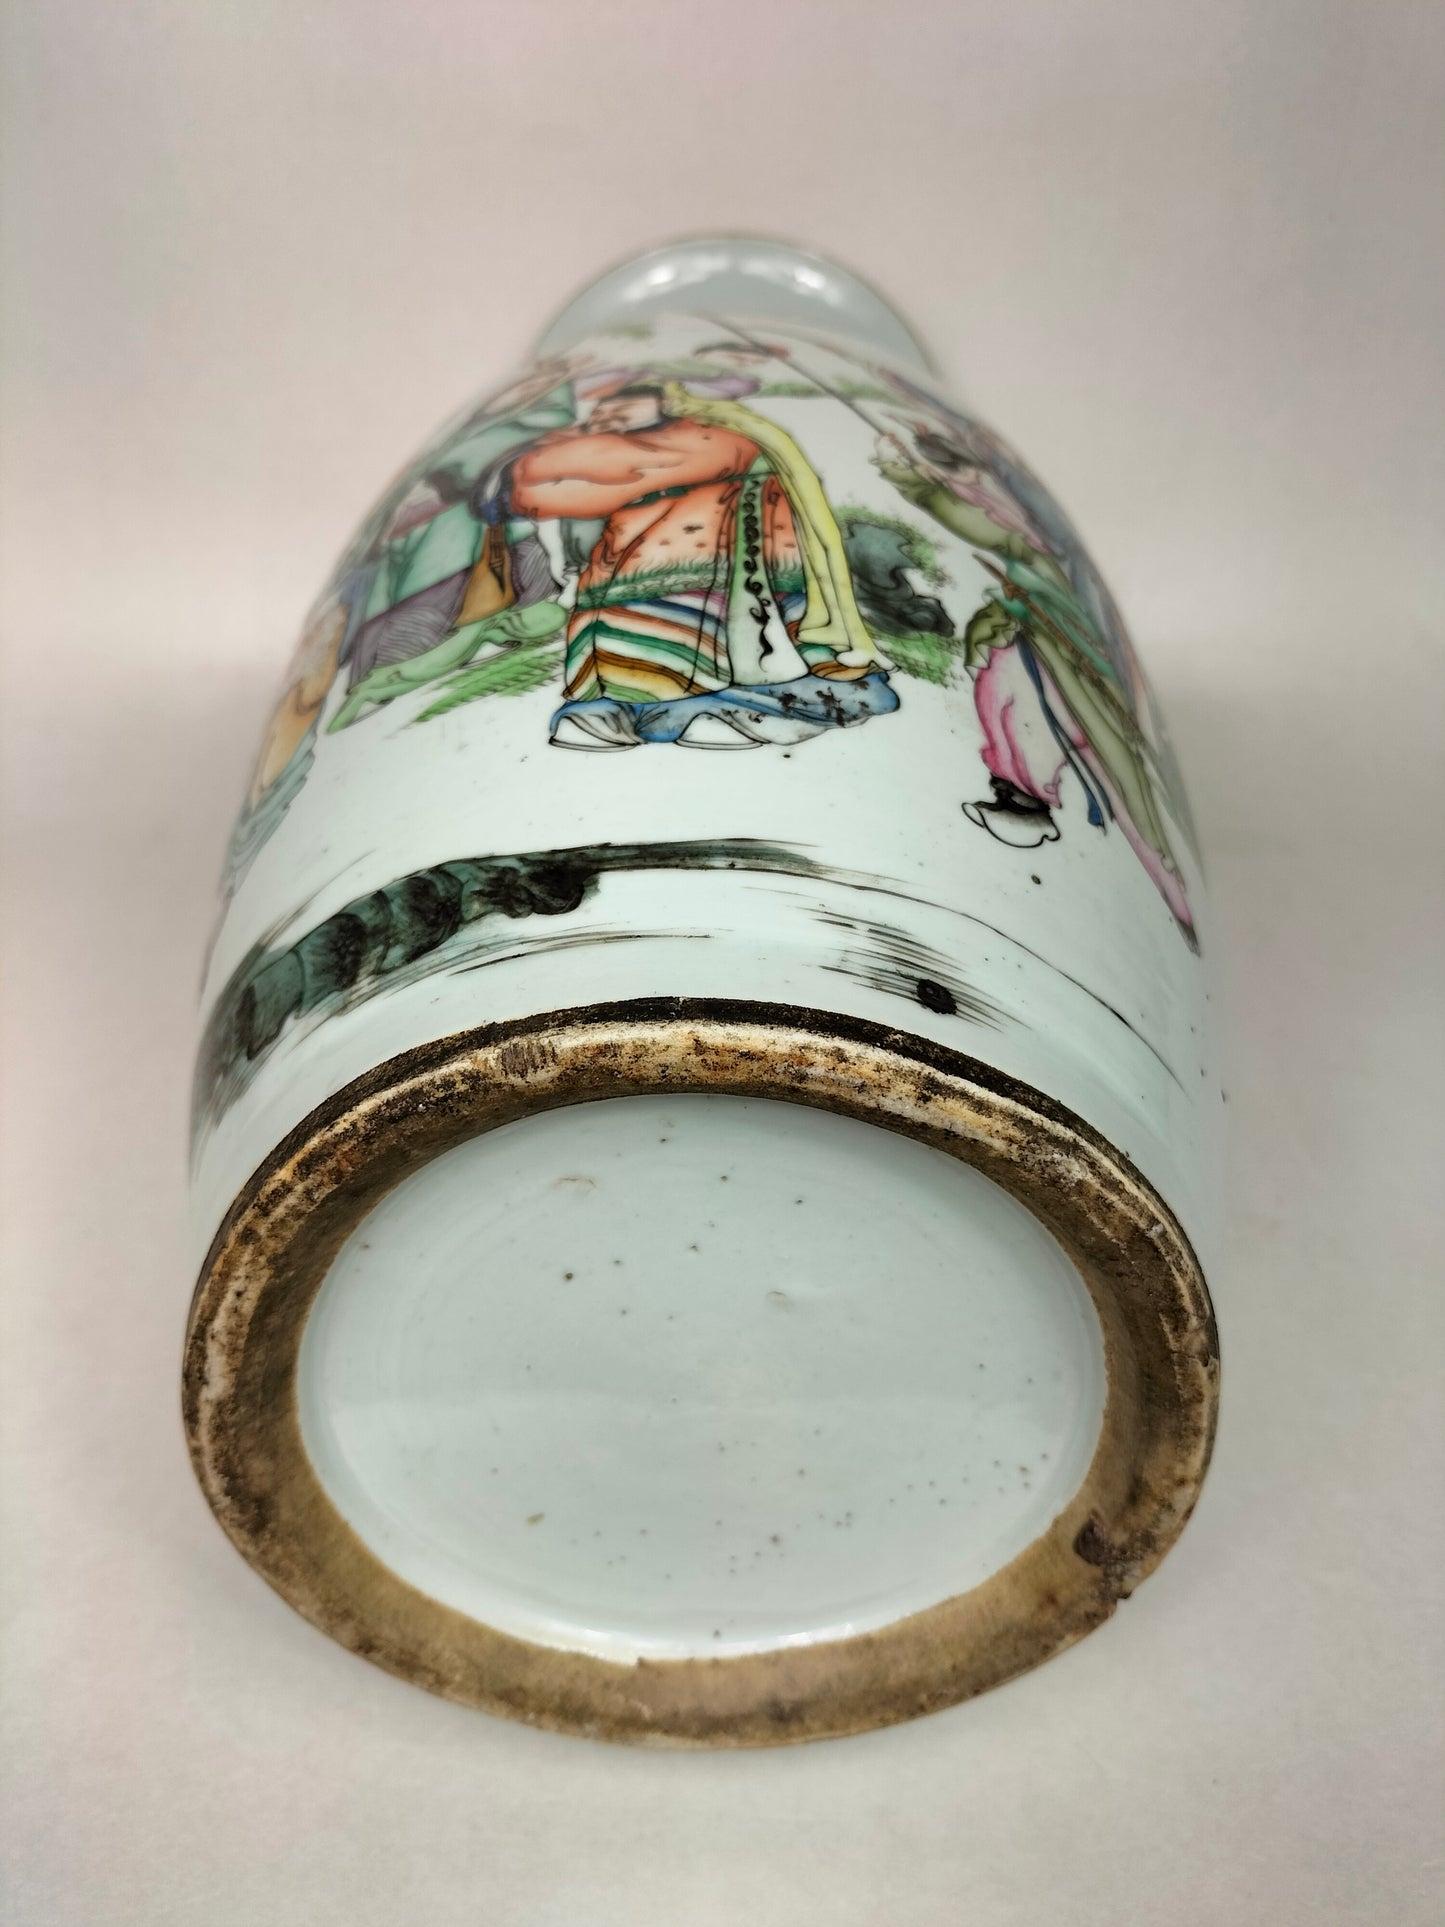 大型古董中国花瓶，带有皇家场景//民国时期（1912-1949）